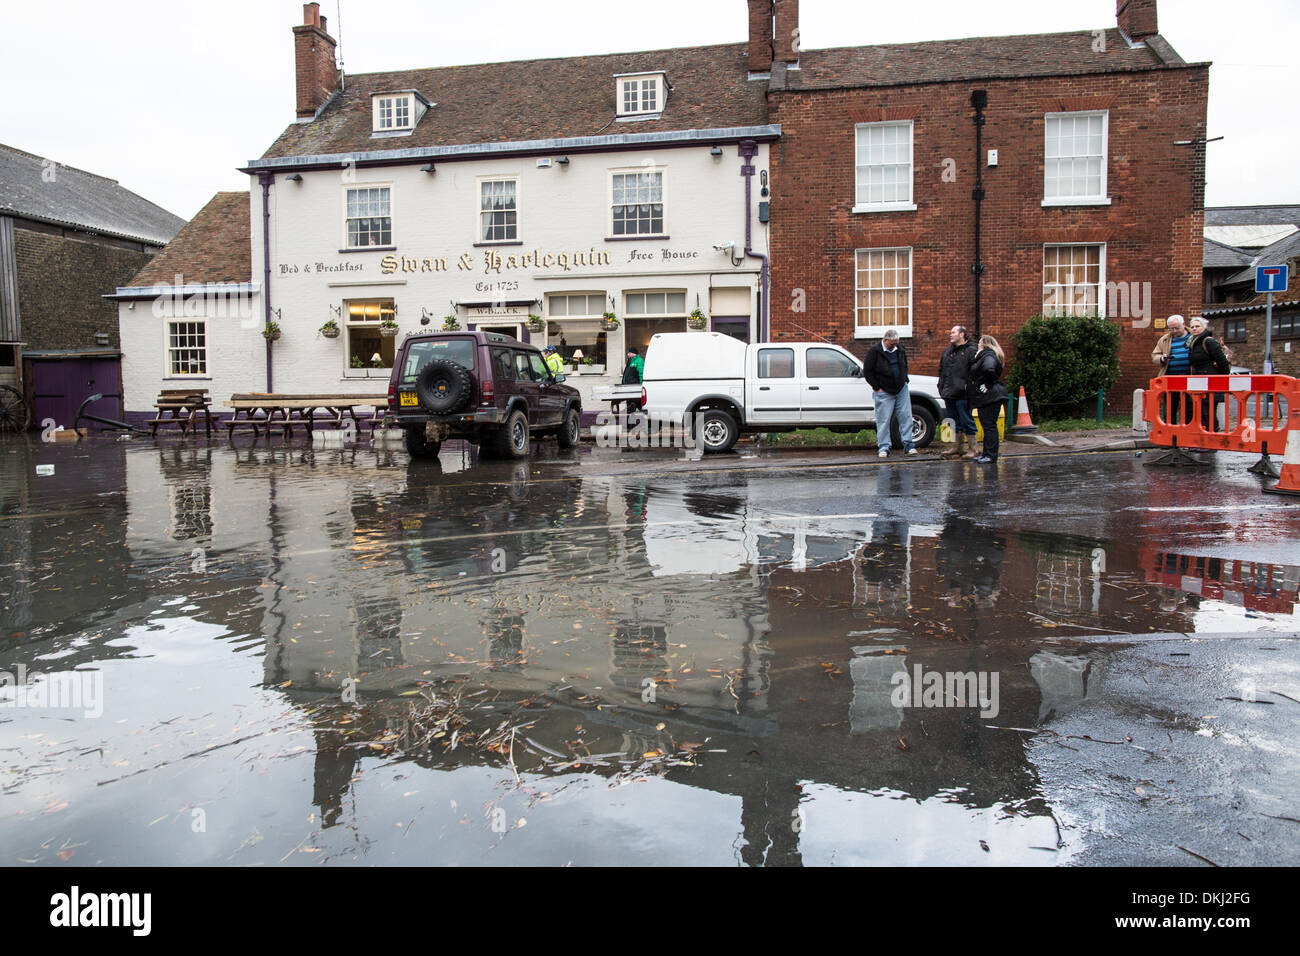 Faversham, Kent, UK . 6 décembre 2013. L'eau des crues entoure le Swan et Arlequin pub dans Quay Lane. Un raz-de-marée associé à de hautes marées provoqué des inondations. Crédit : Christopher Briggs/Alamy Live News Banque D'Images